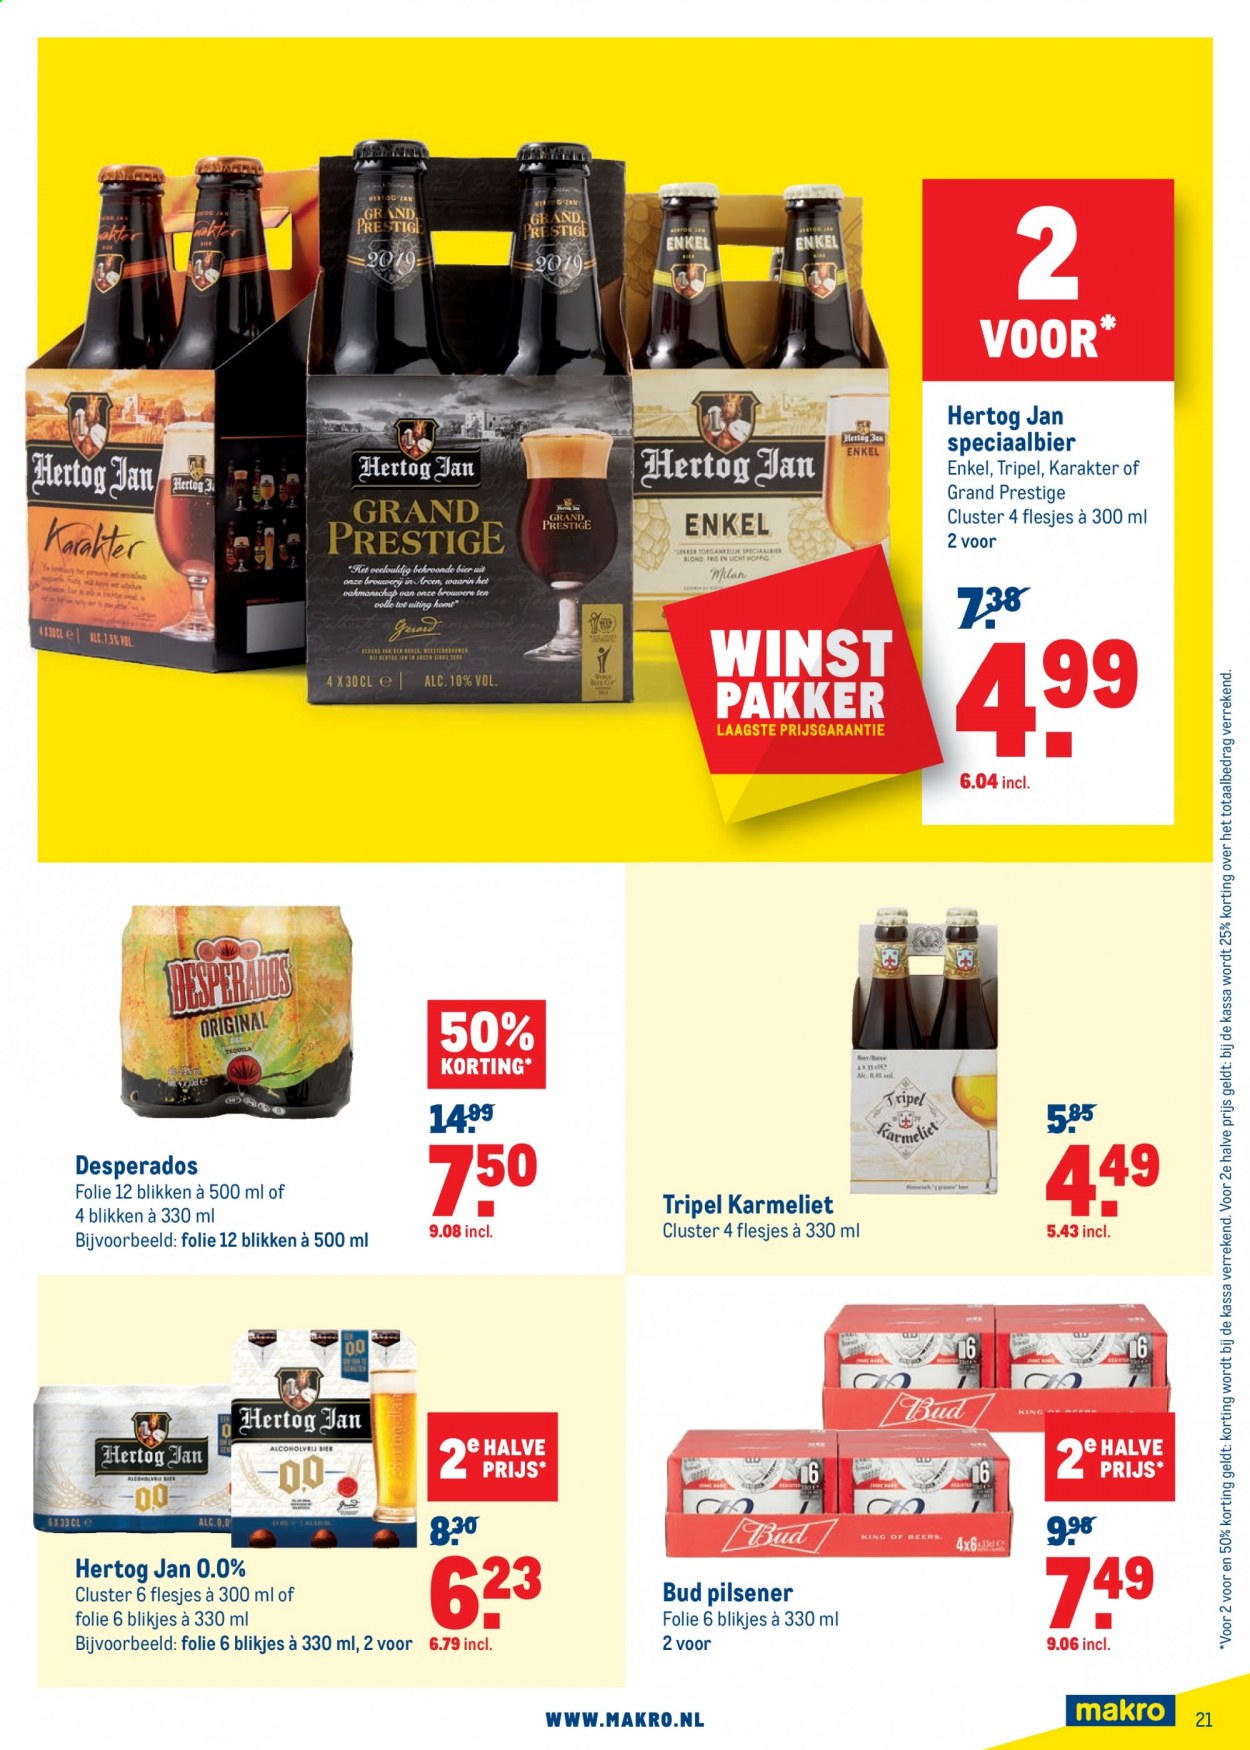 thumbnail - Makro-aanbieding - 3-3-2021 - 16-3-2021 -  producten in de aanbieding - pilsener, Hertog Jan, bier, Desperados. Pagina 21.